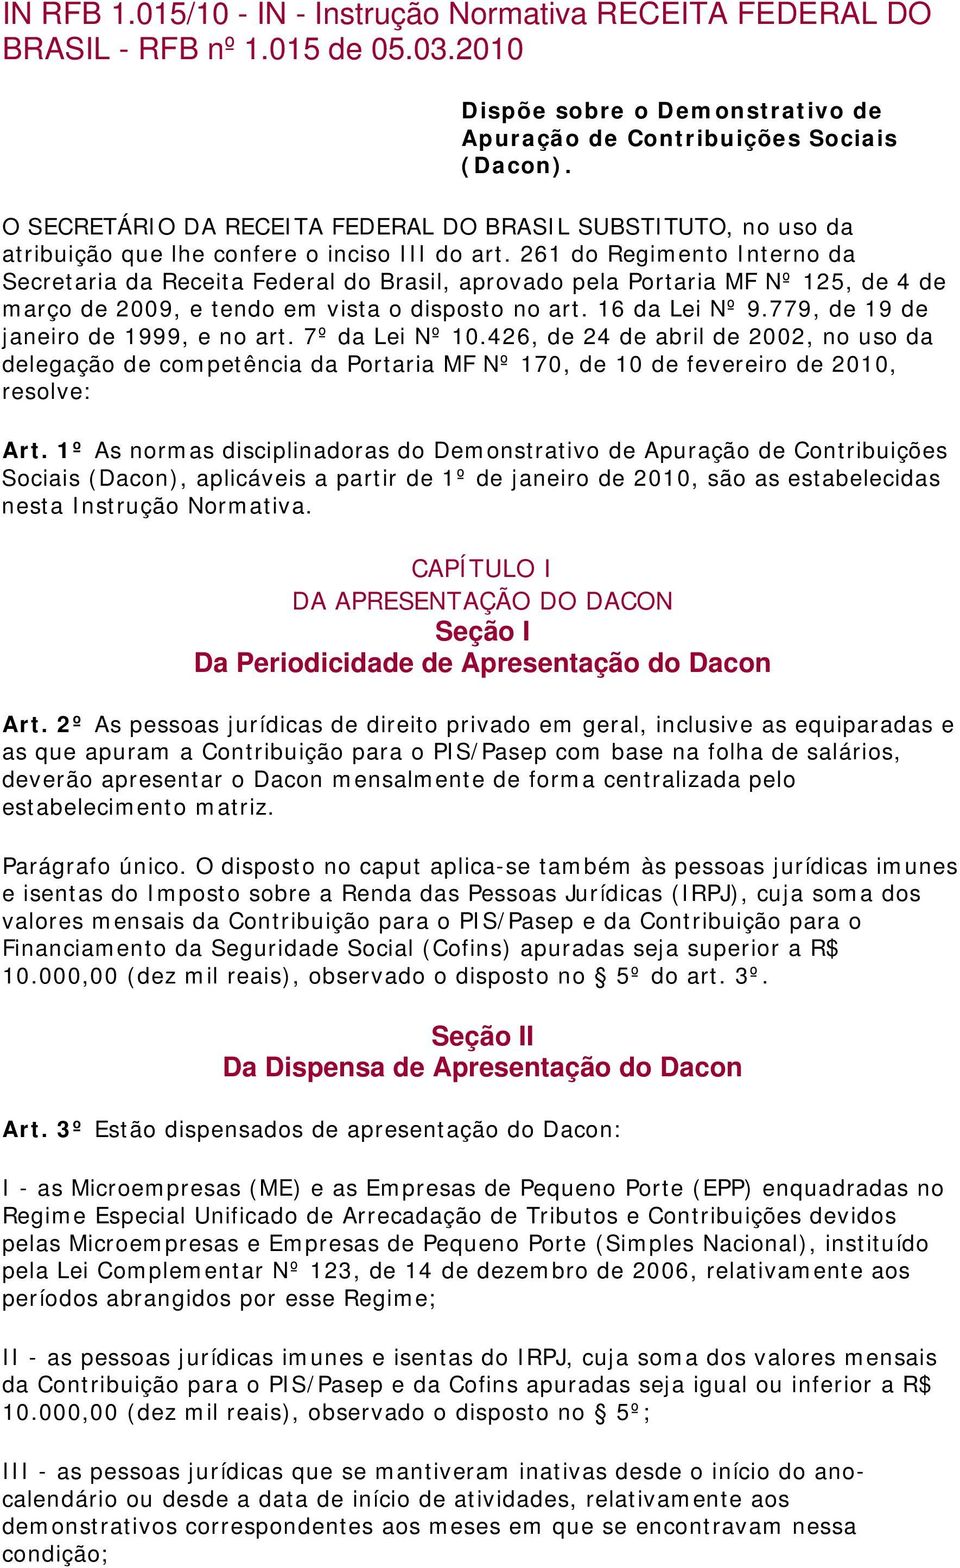 261 do Regimento Interno da Secretaria da Receita Federal do Brasil, aprovado pela Portaria MF Nº 125, de 4 de março de 2009, e tendo em vista o disposto no art. 16 da Lei Nº 9.